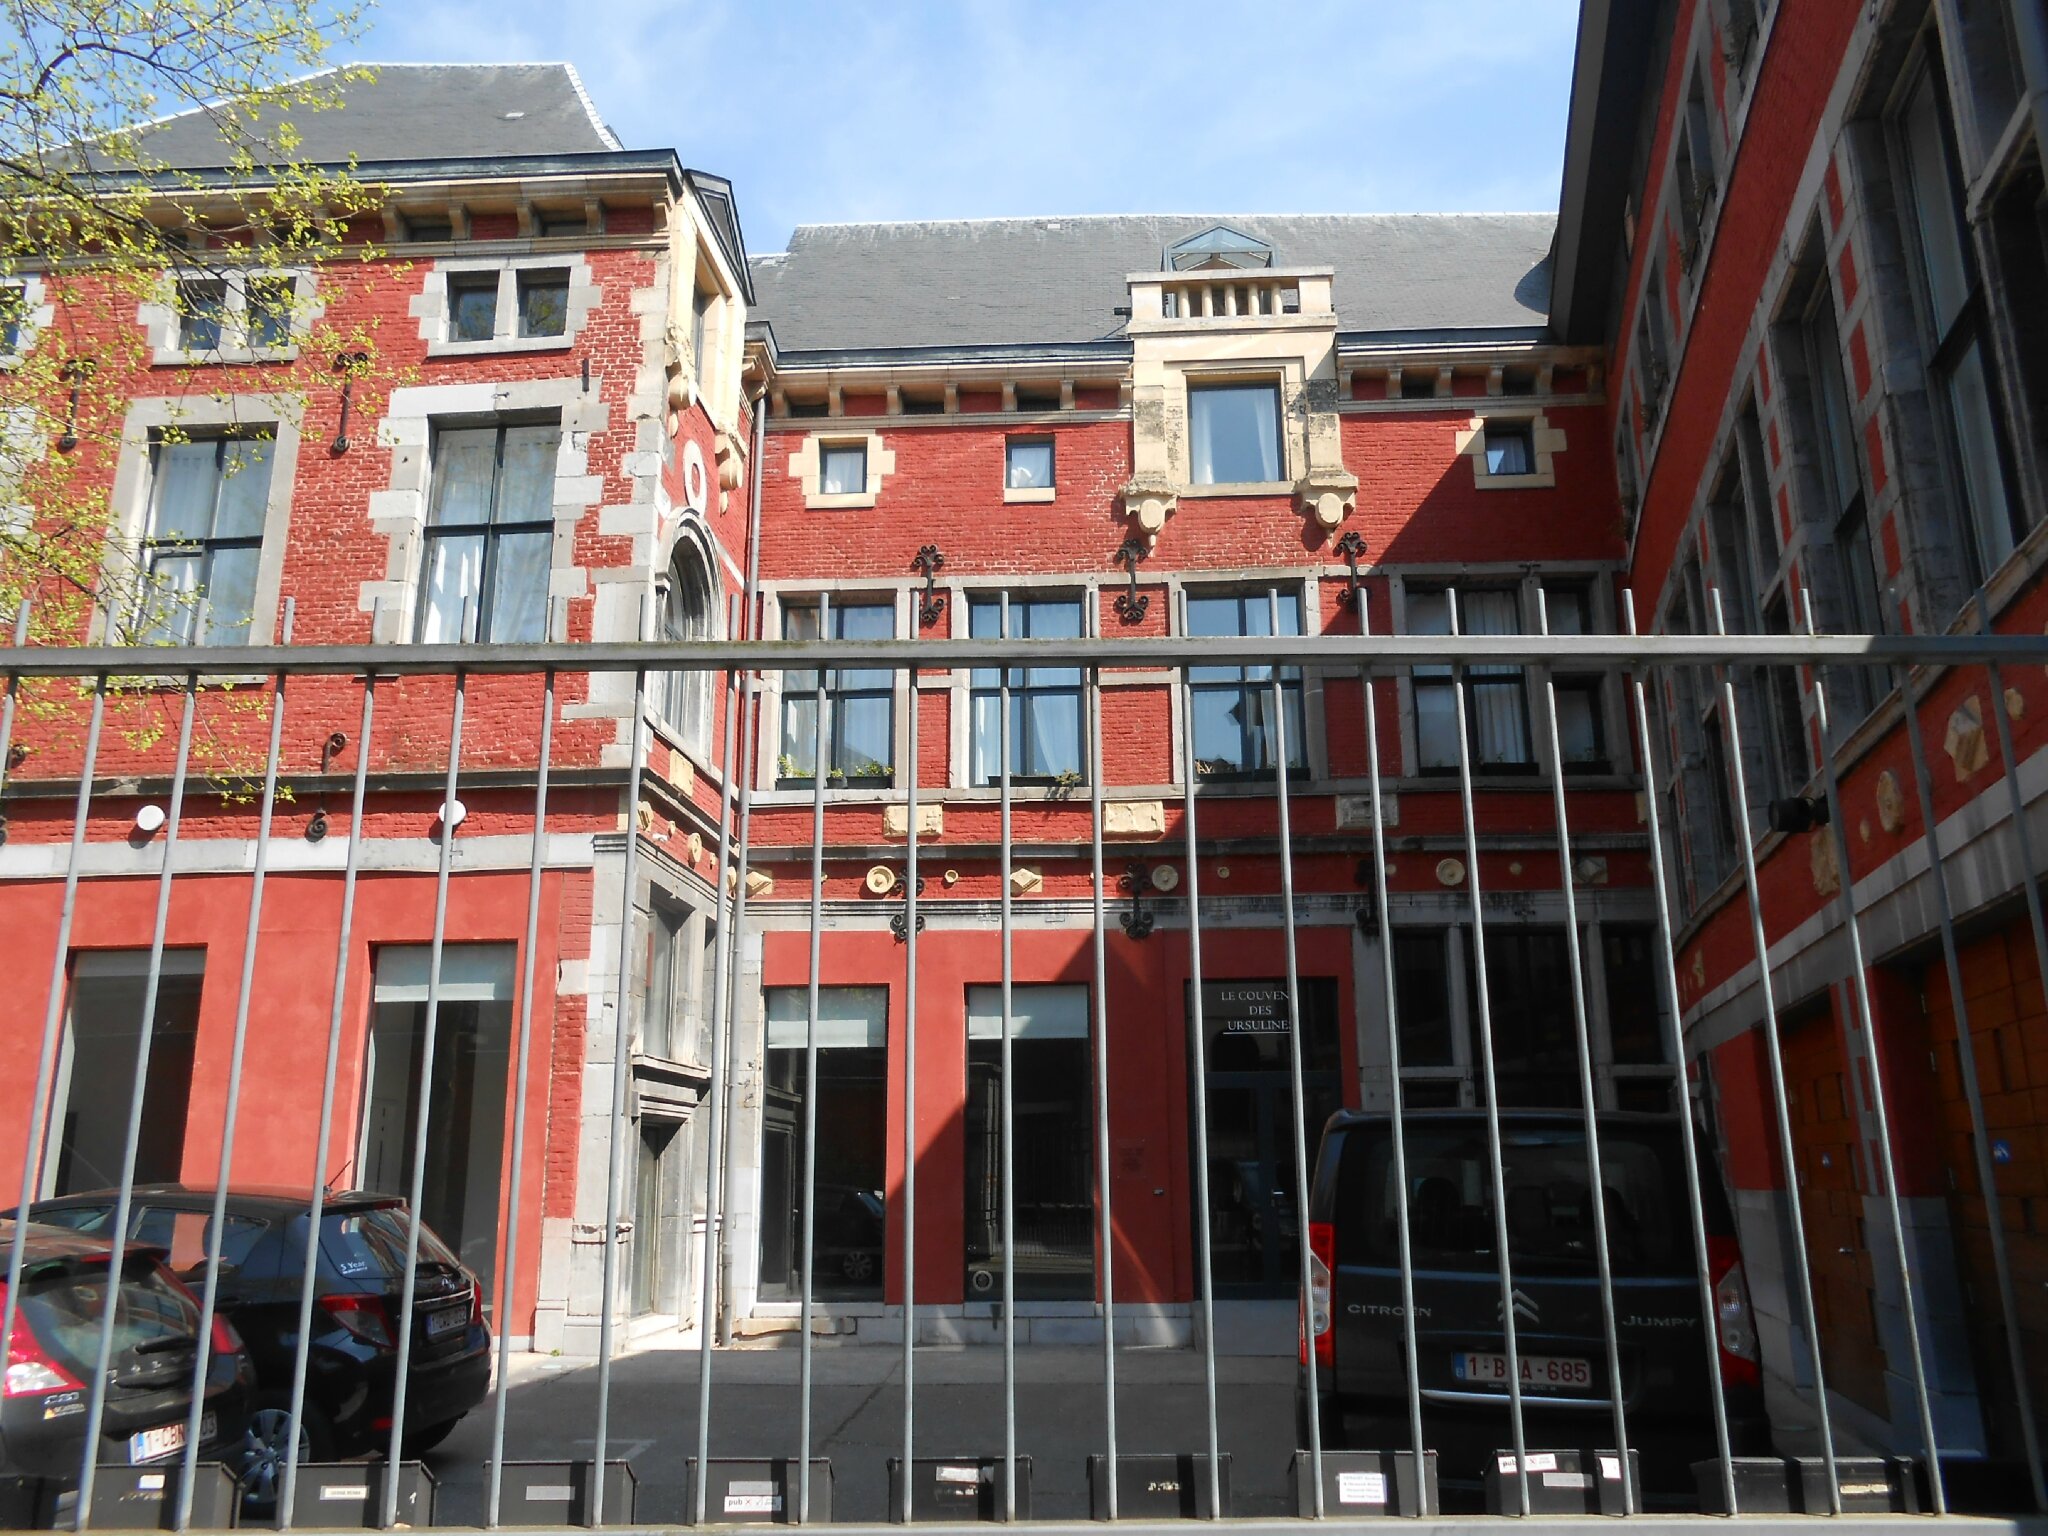 Les Impasses du Quartier Hors-Château - Intriguing Alleys in Liège